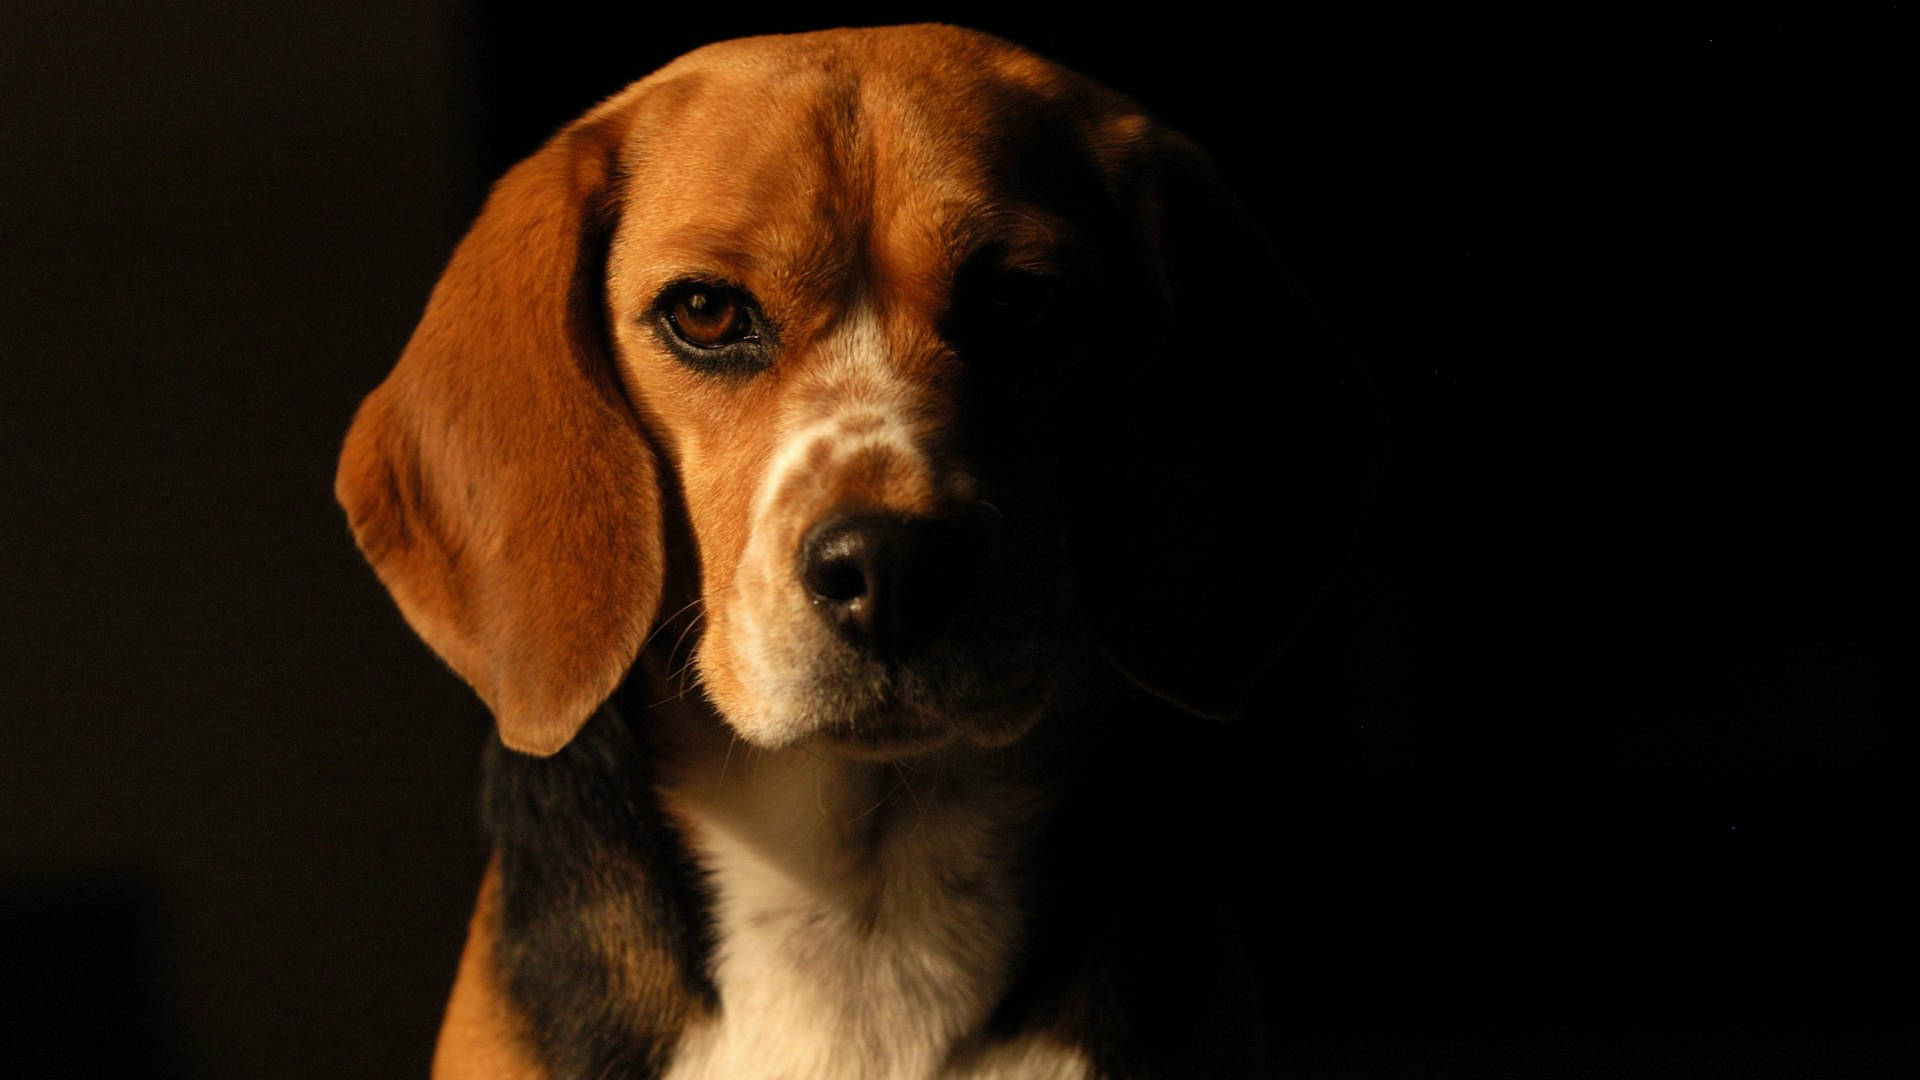 Fierce Beagle Dog In The Dark Wallpaper